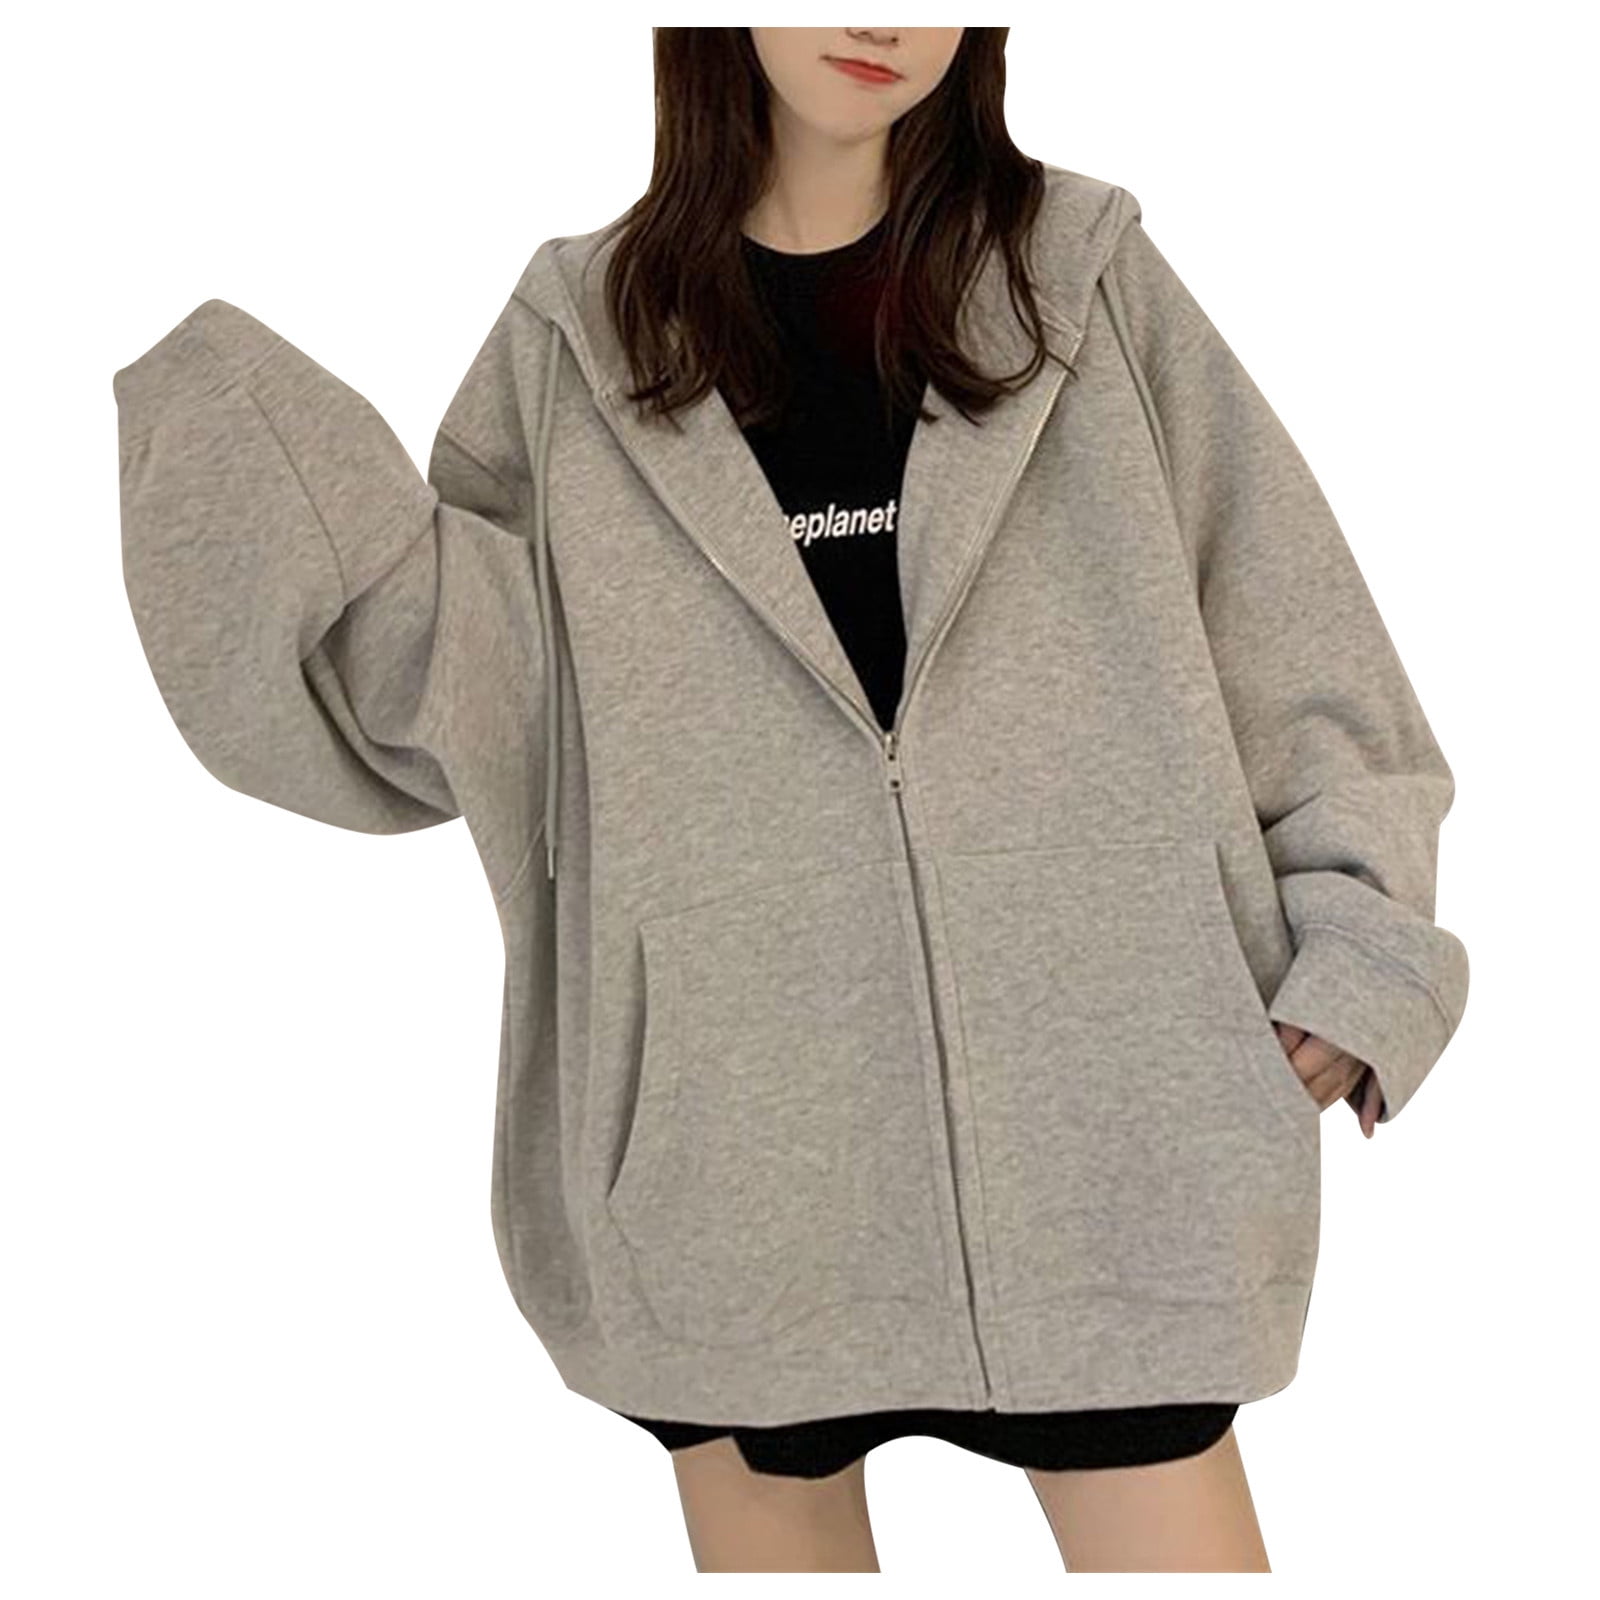 Oversized Women Long Sleeve Printed Hoddie Sweatshirt Loose Fit Pullover Blouse